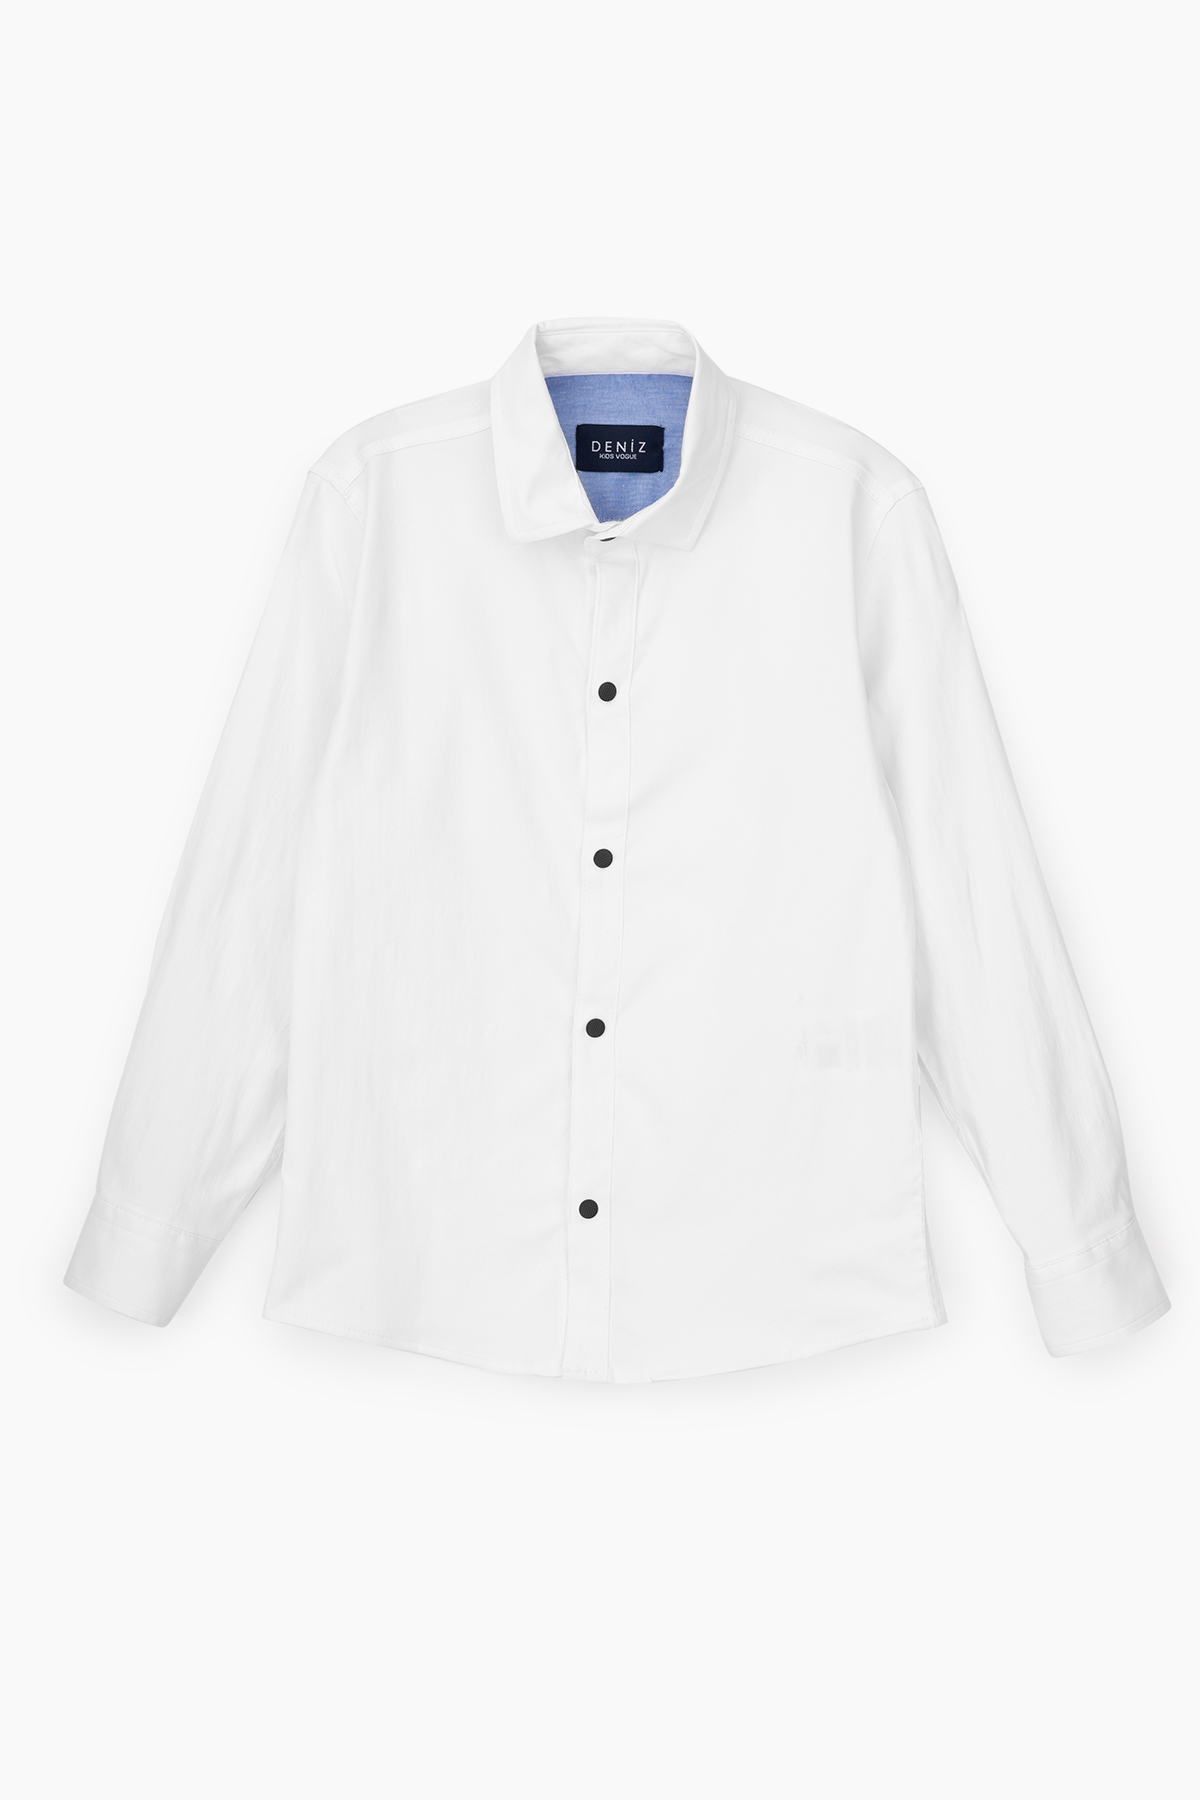 Рубашка однотонная для мальчика Deniz 311 122 см Белый (2000989711339)